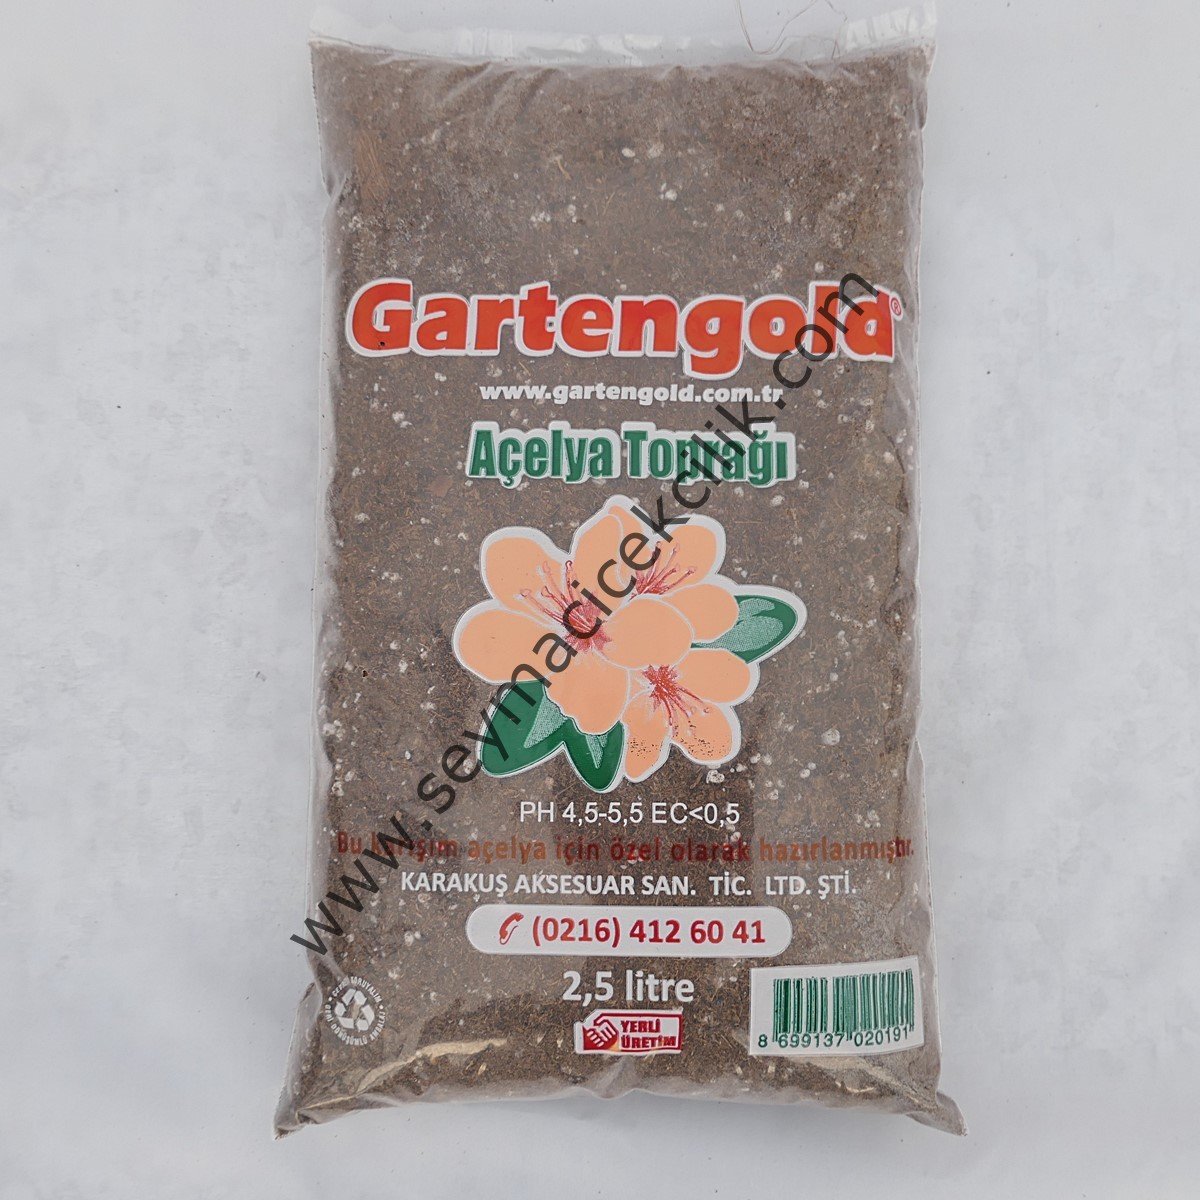 Gartengold Açelya Toprağı 2,5 litre